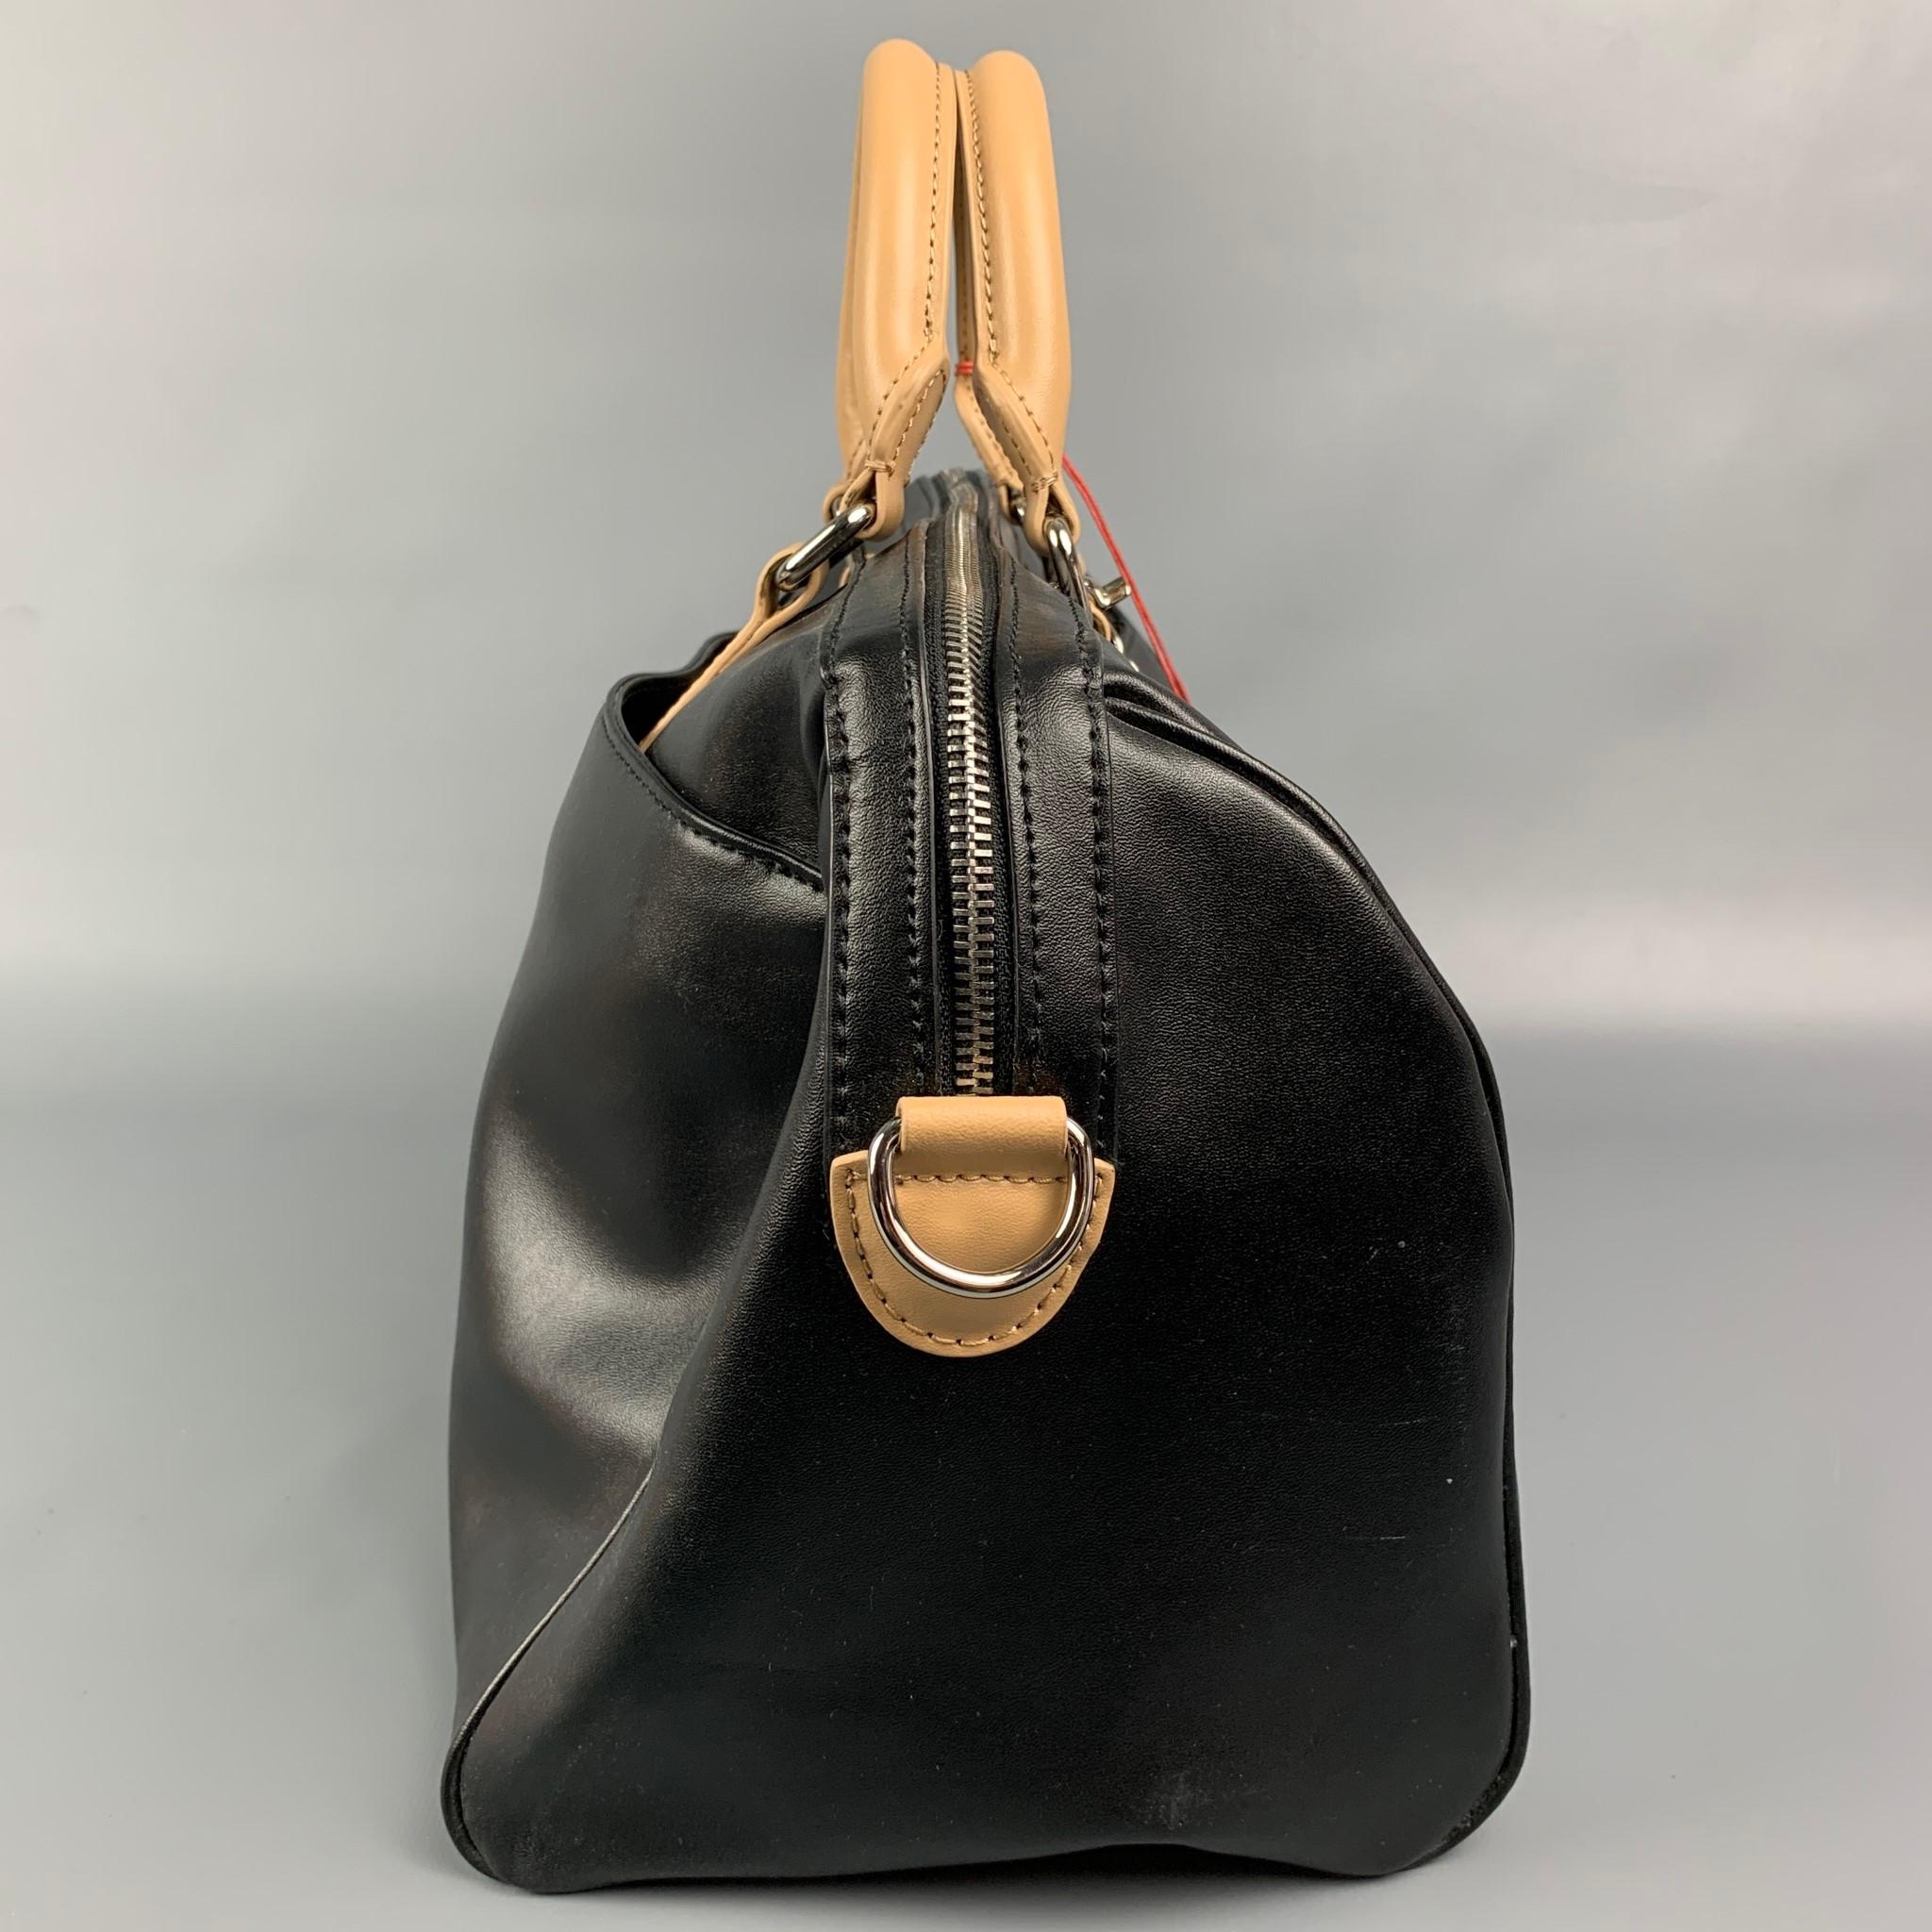 black and tan handbag